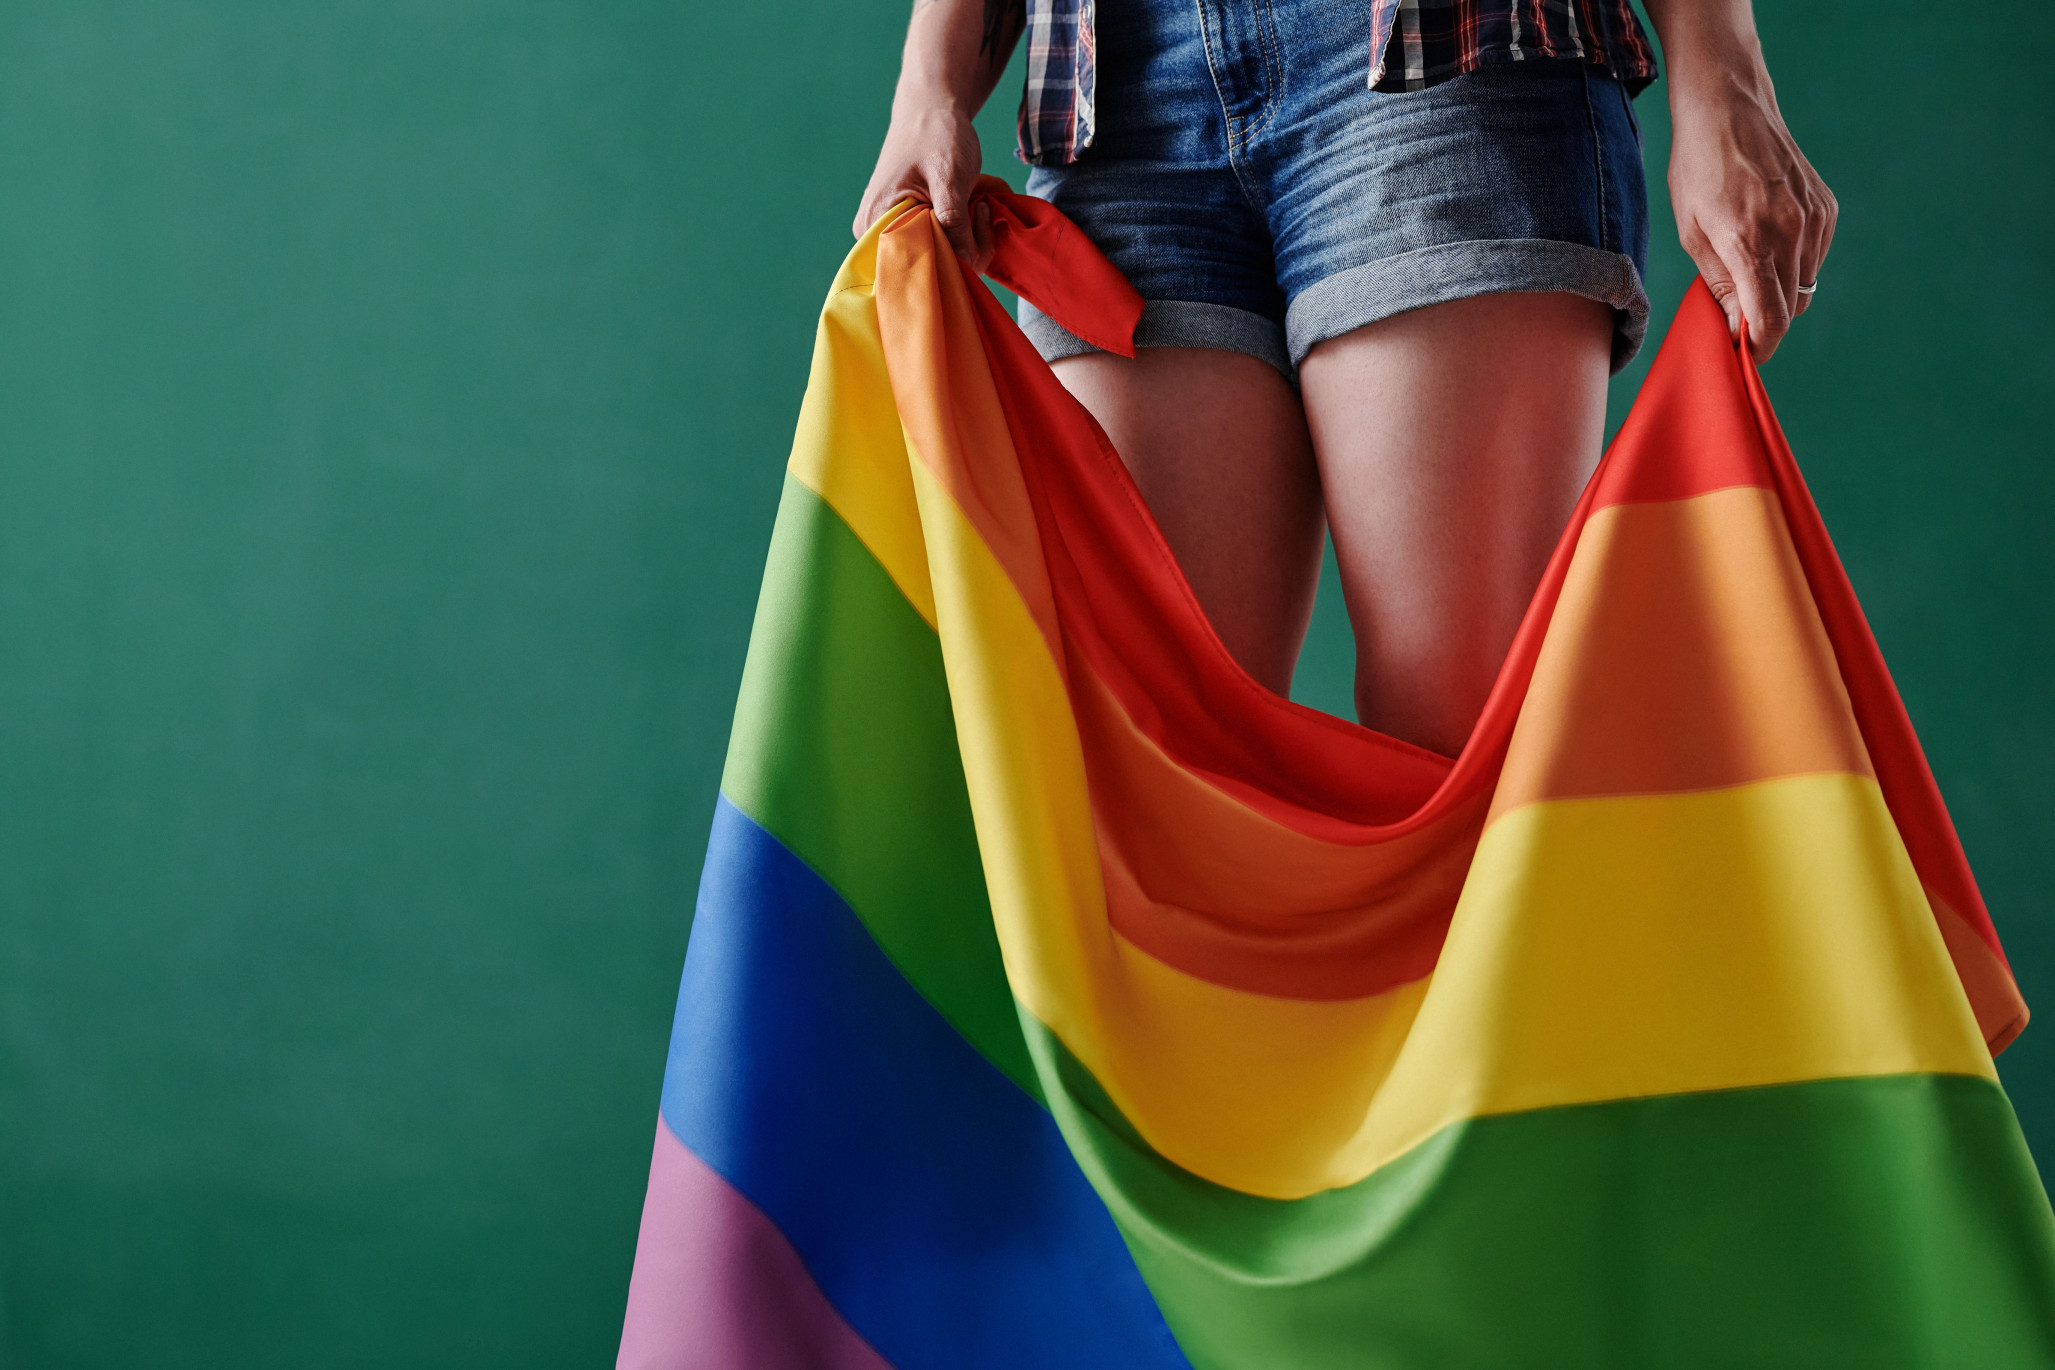 У Раді зареєстрували три проєкти законів щодо «пропаганди гомосексуалізму, трансгендеризму і педофілії». Правозахисники переконані, що їх не ухвалять